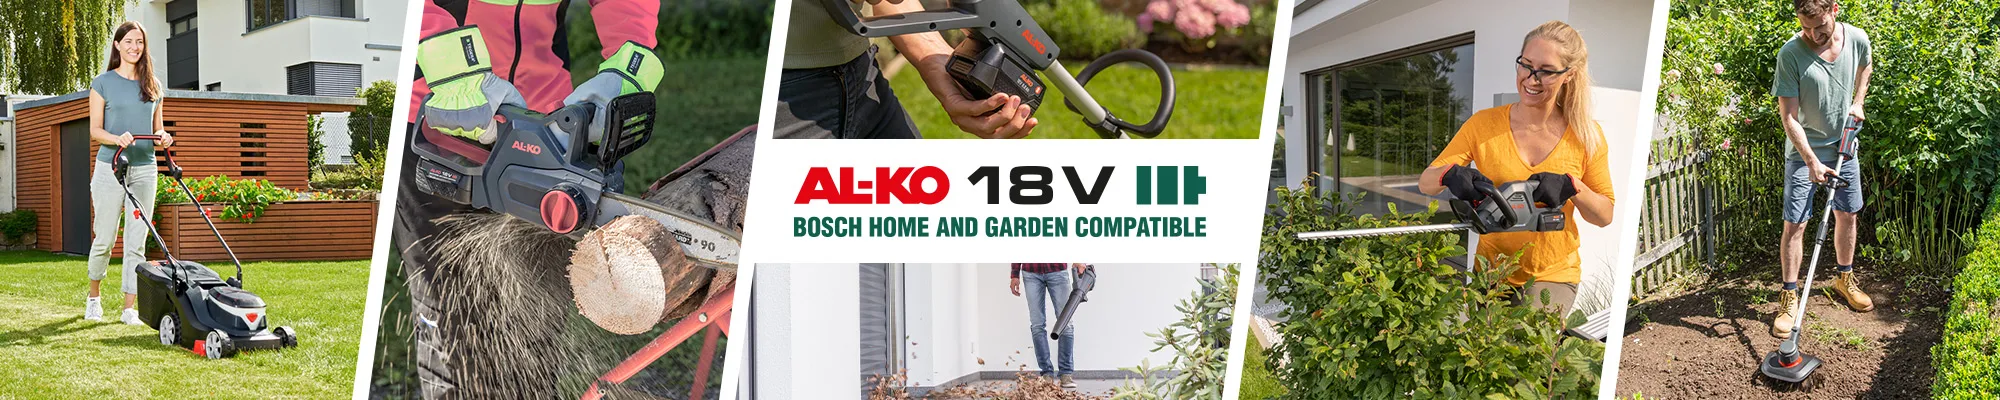 AL-KO 18 V Bosch Home & Garden compatible Akku-Familie im Einsatz | AL-KO Gartengeräte